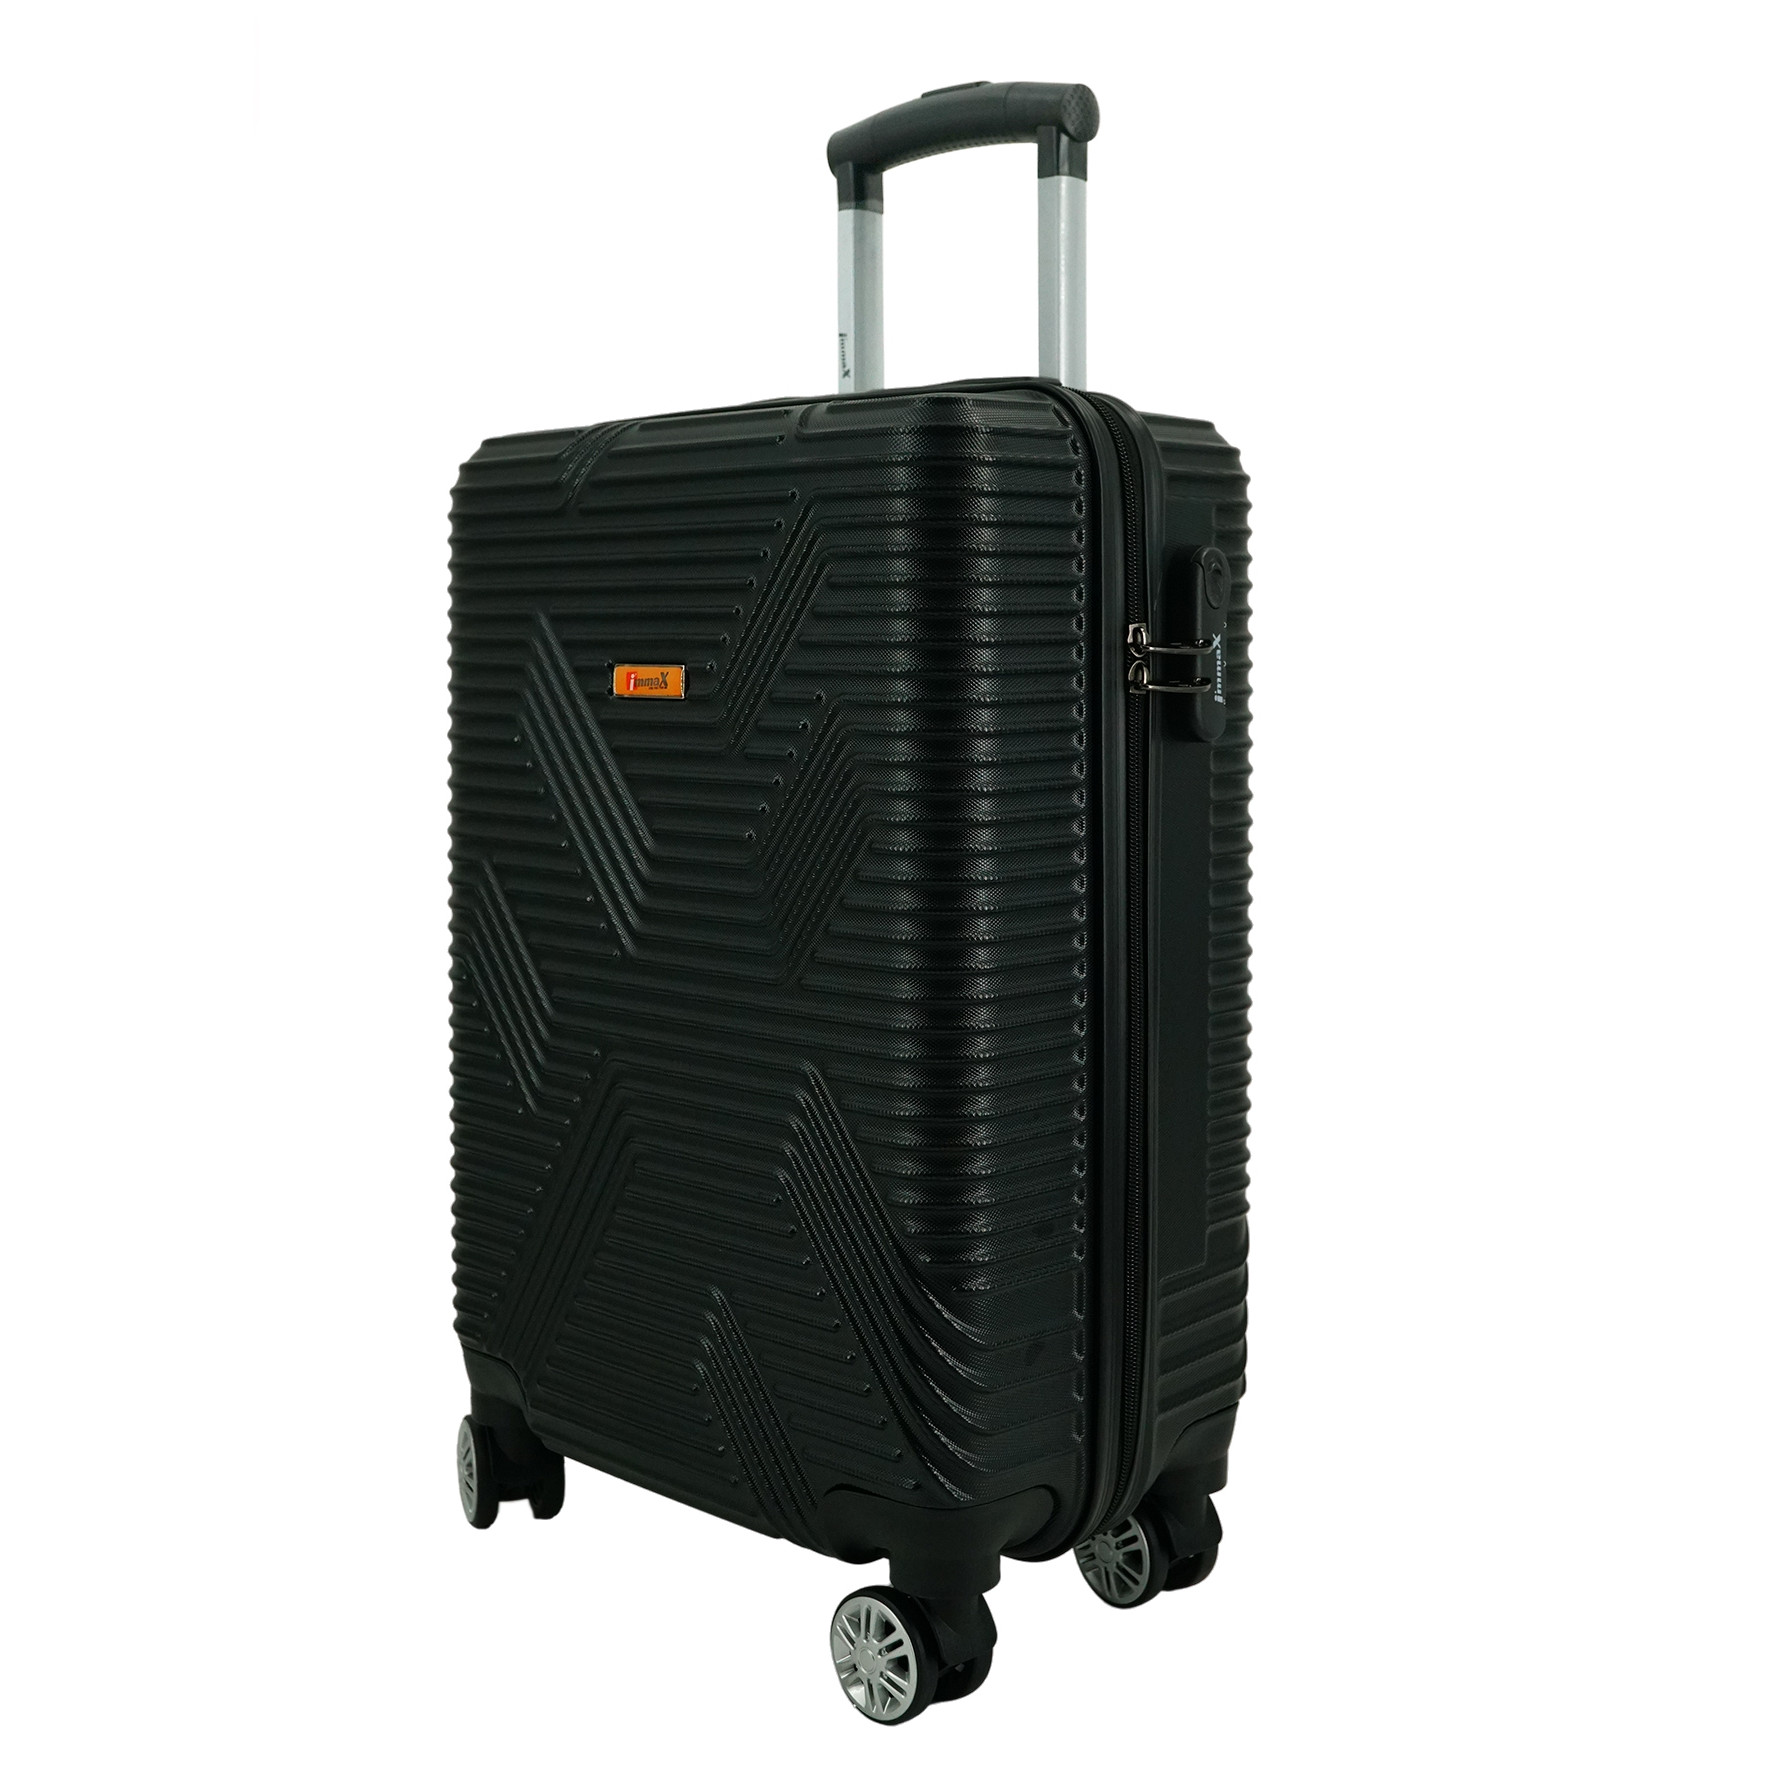 Vali du lịch size ký gửi hành lý 24inch 60cm i'mmaX X11